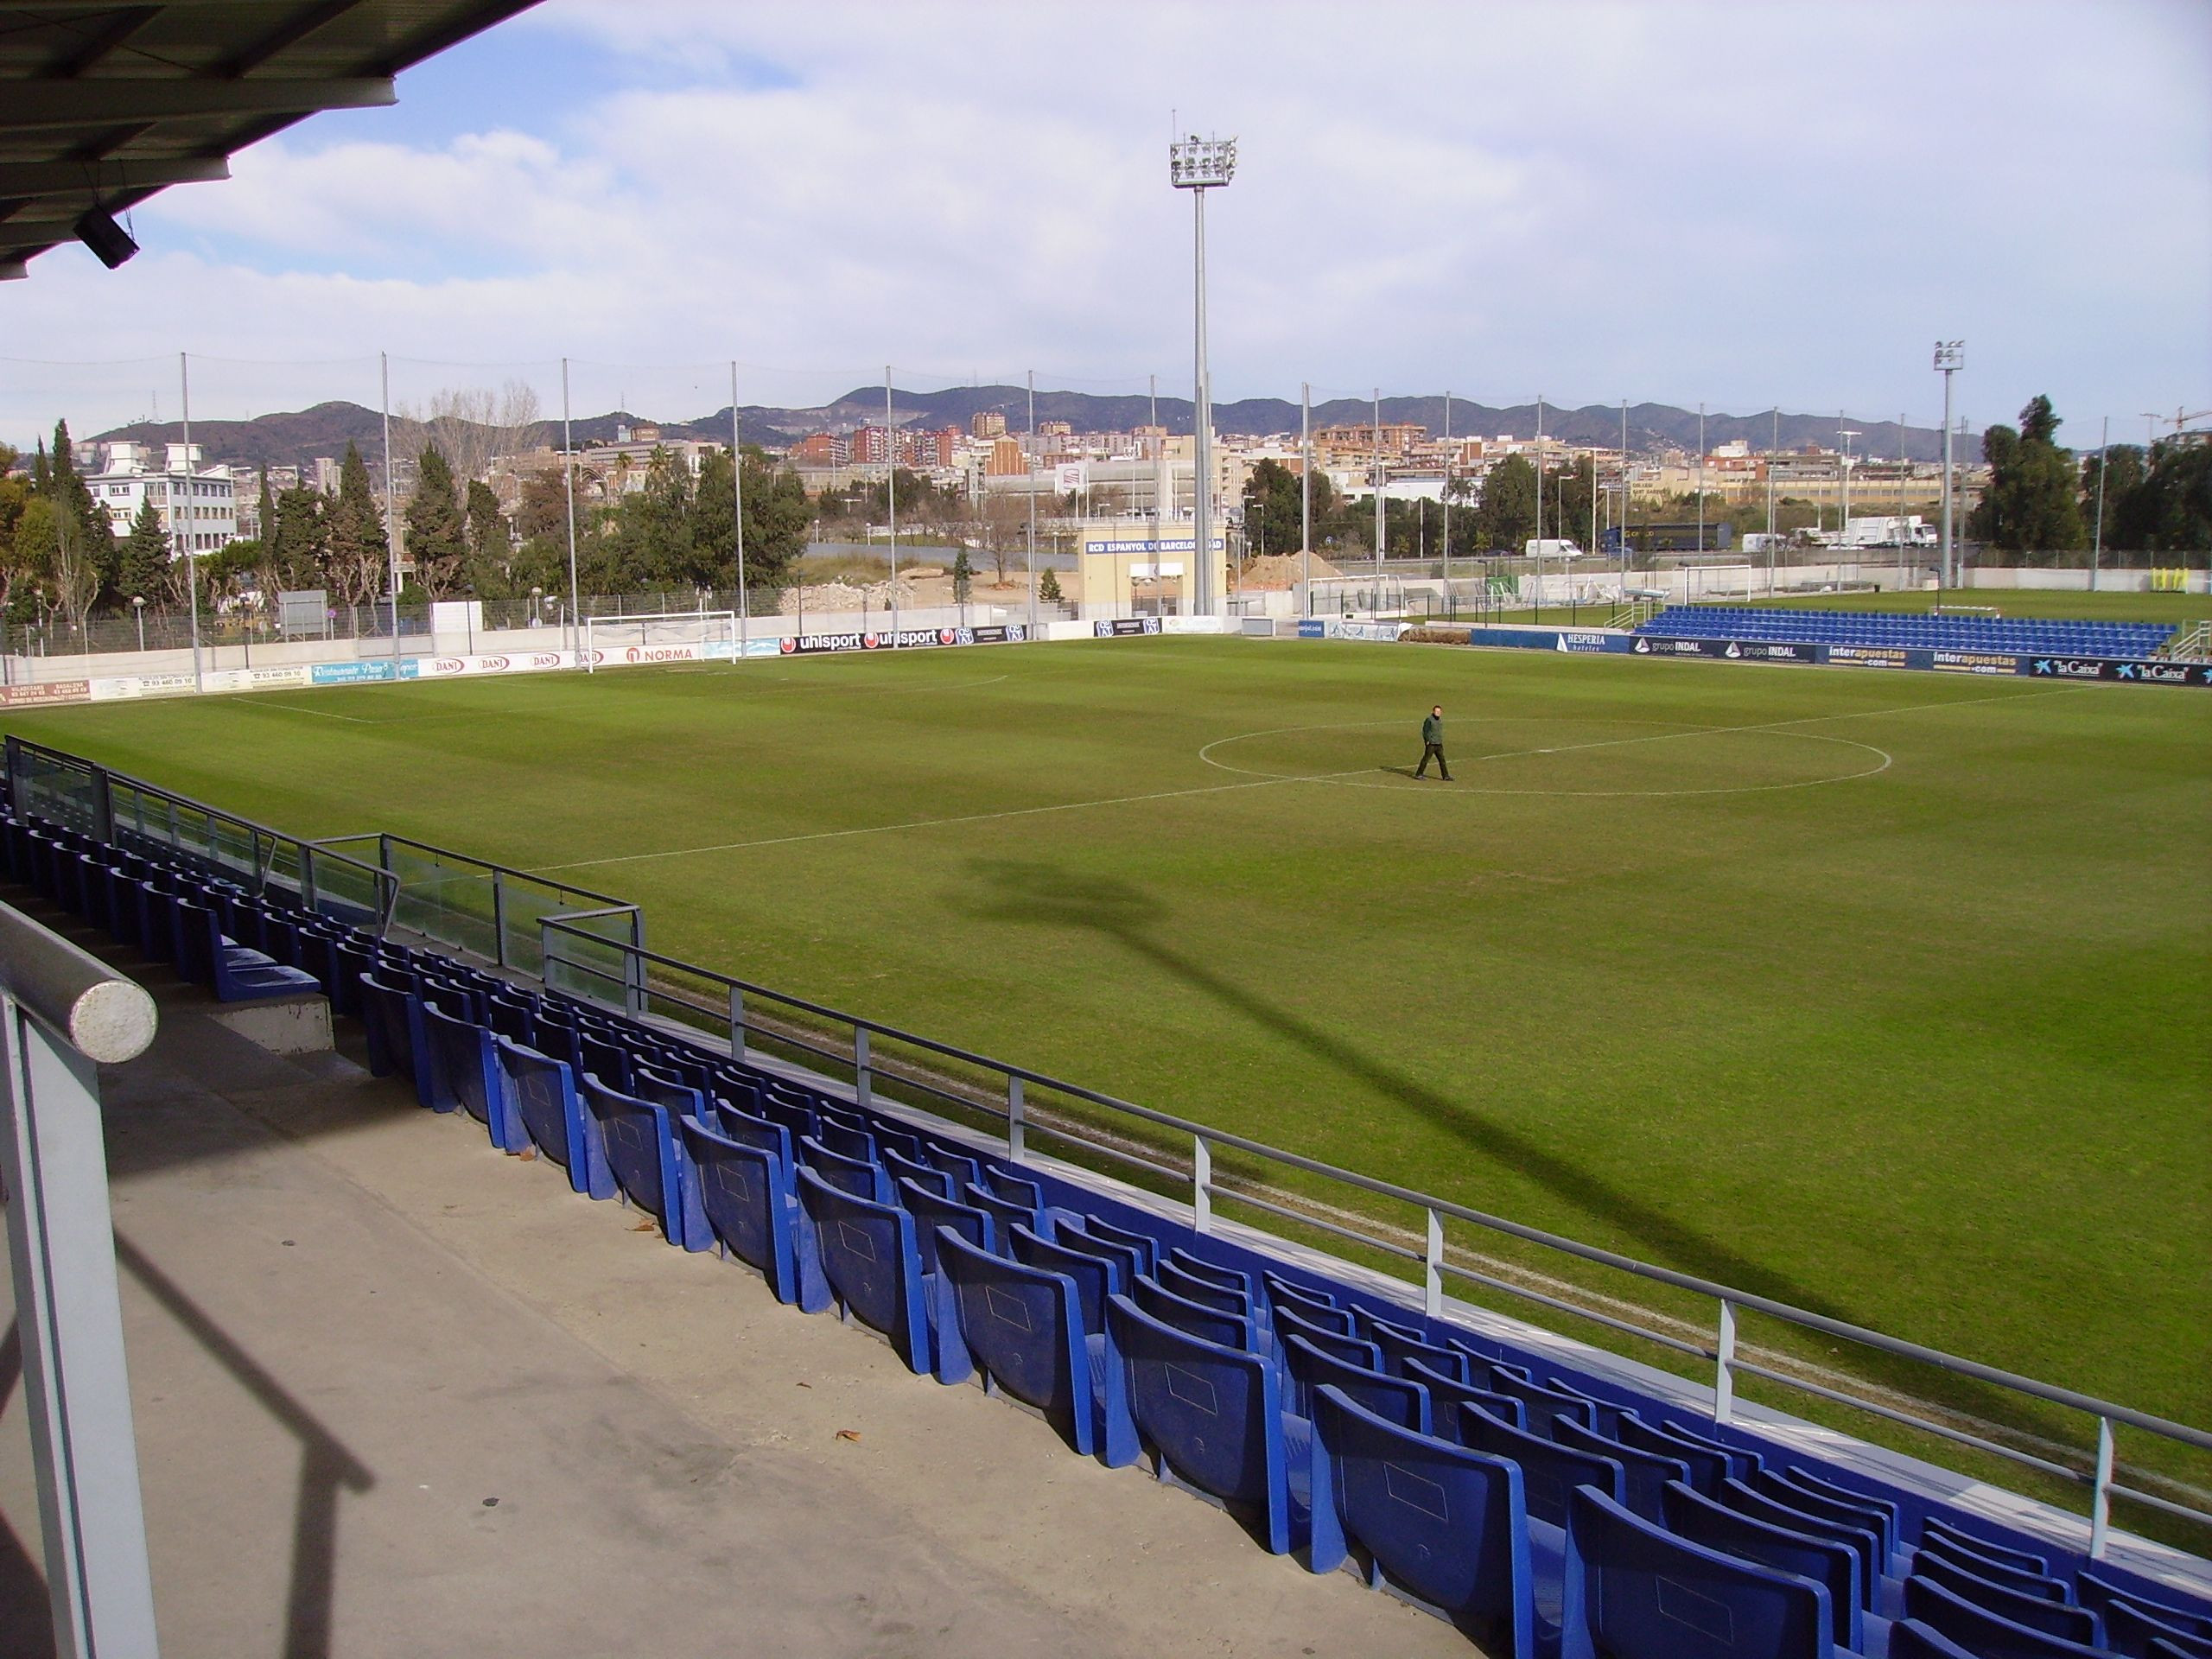 La Ciutat Esportiva del RCD Espanyol en Sant Adrià / RCDE